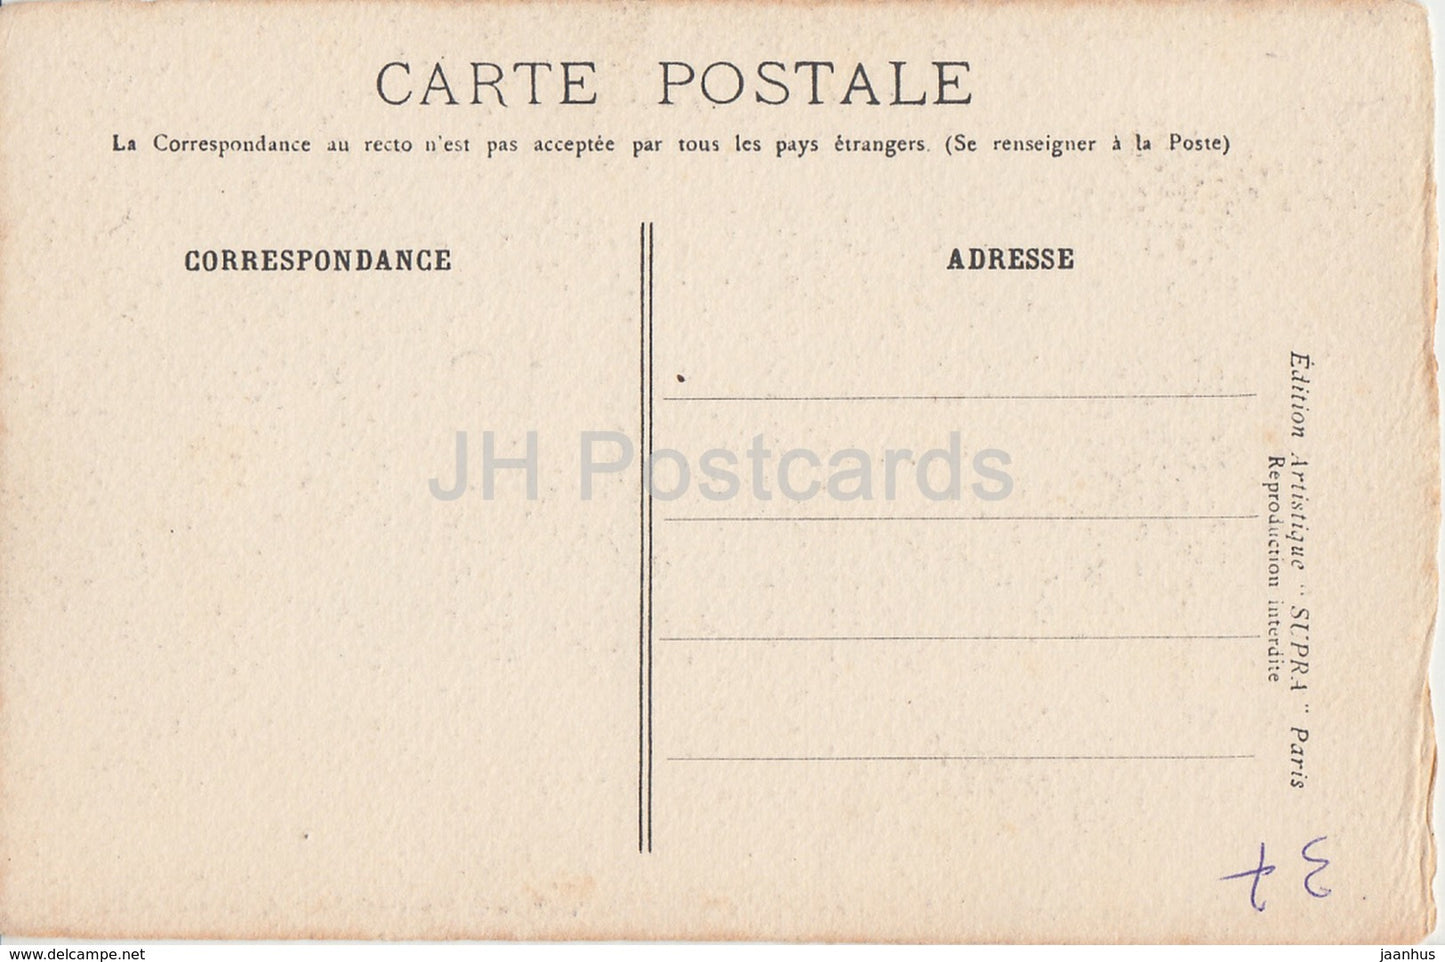 Chateau d' Azay Le Rideau - Indre &amp; Loire - La Valle de la Loire - Schloss - 16 - alte Postkarte - Frankreich - unbenutzt